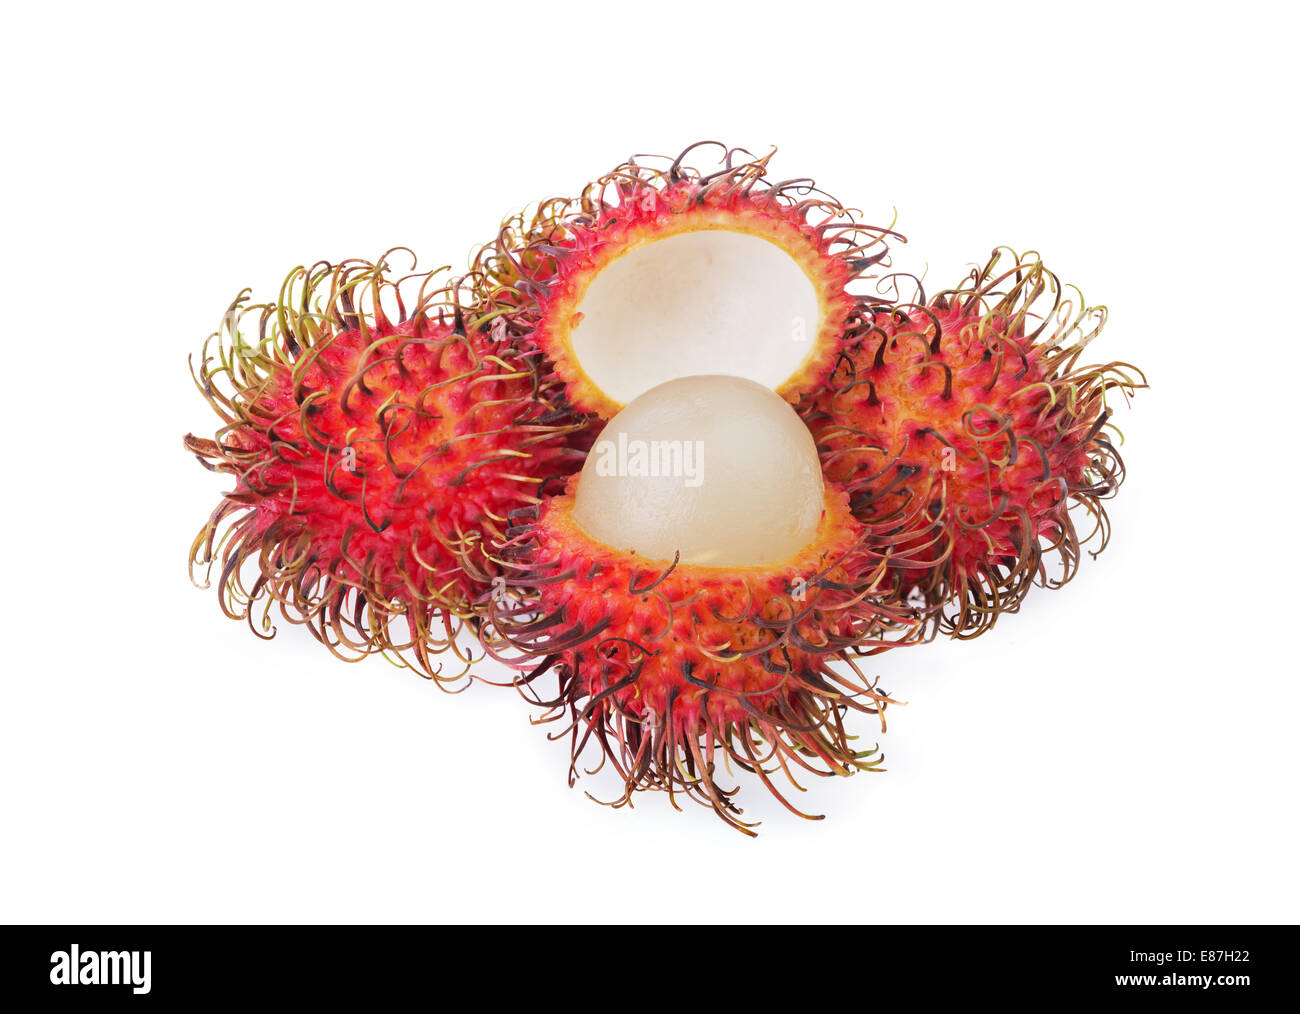 Fresh rambutan fruit isolated on white background Stock Photo